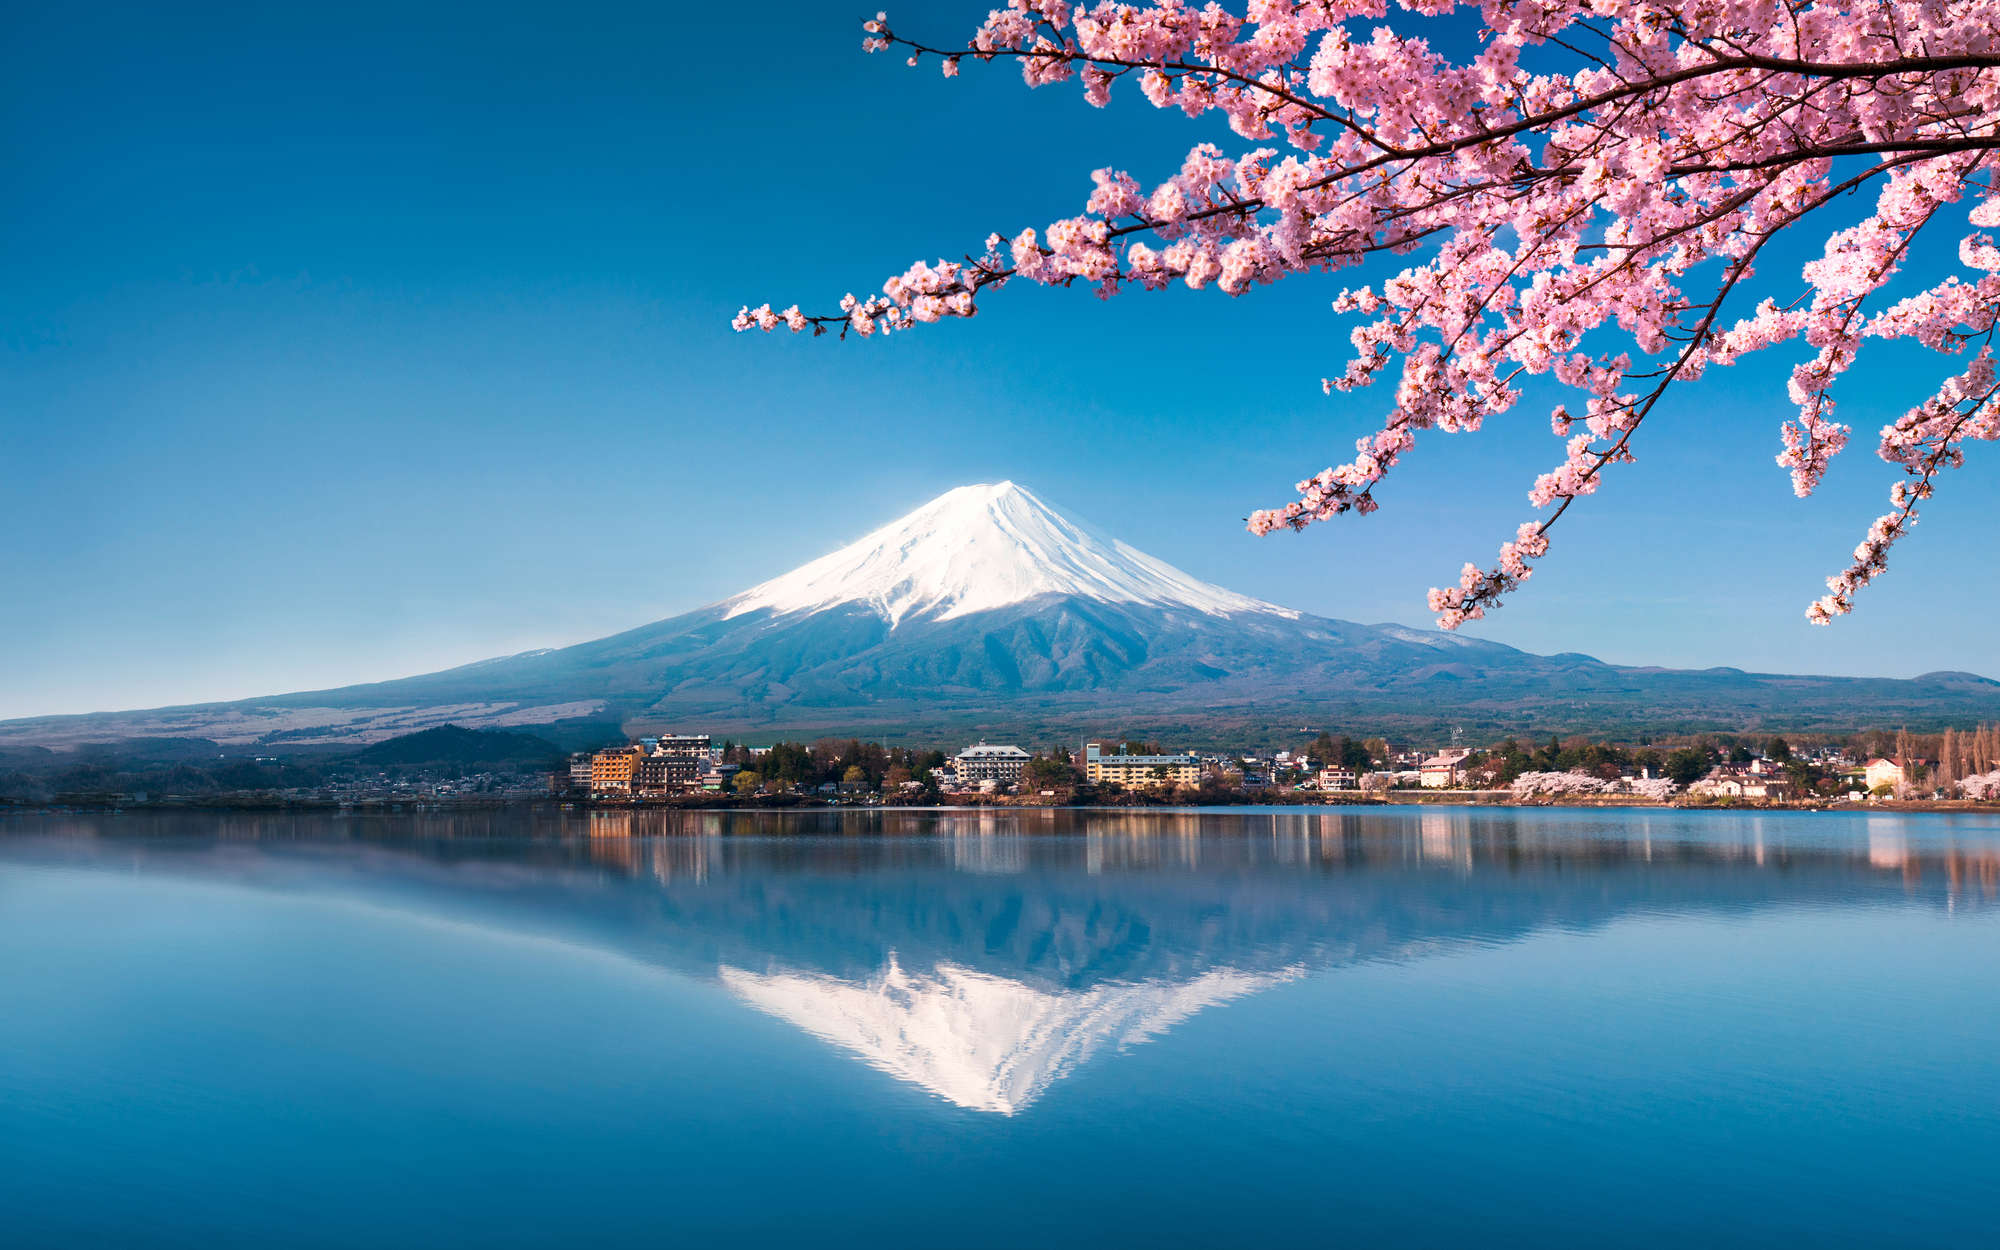             Fototapete Vulkan Fuji in Japan – Mattes Glattvlies
        